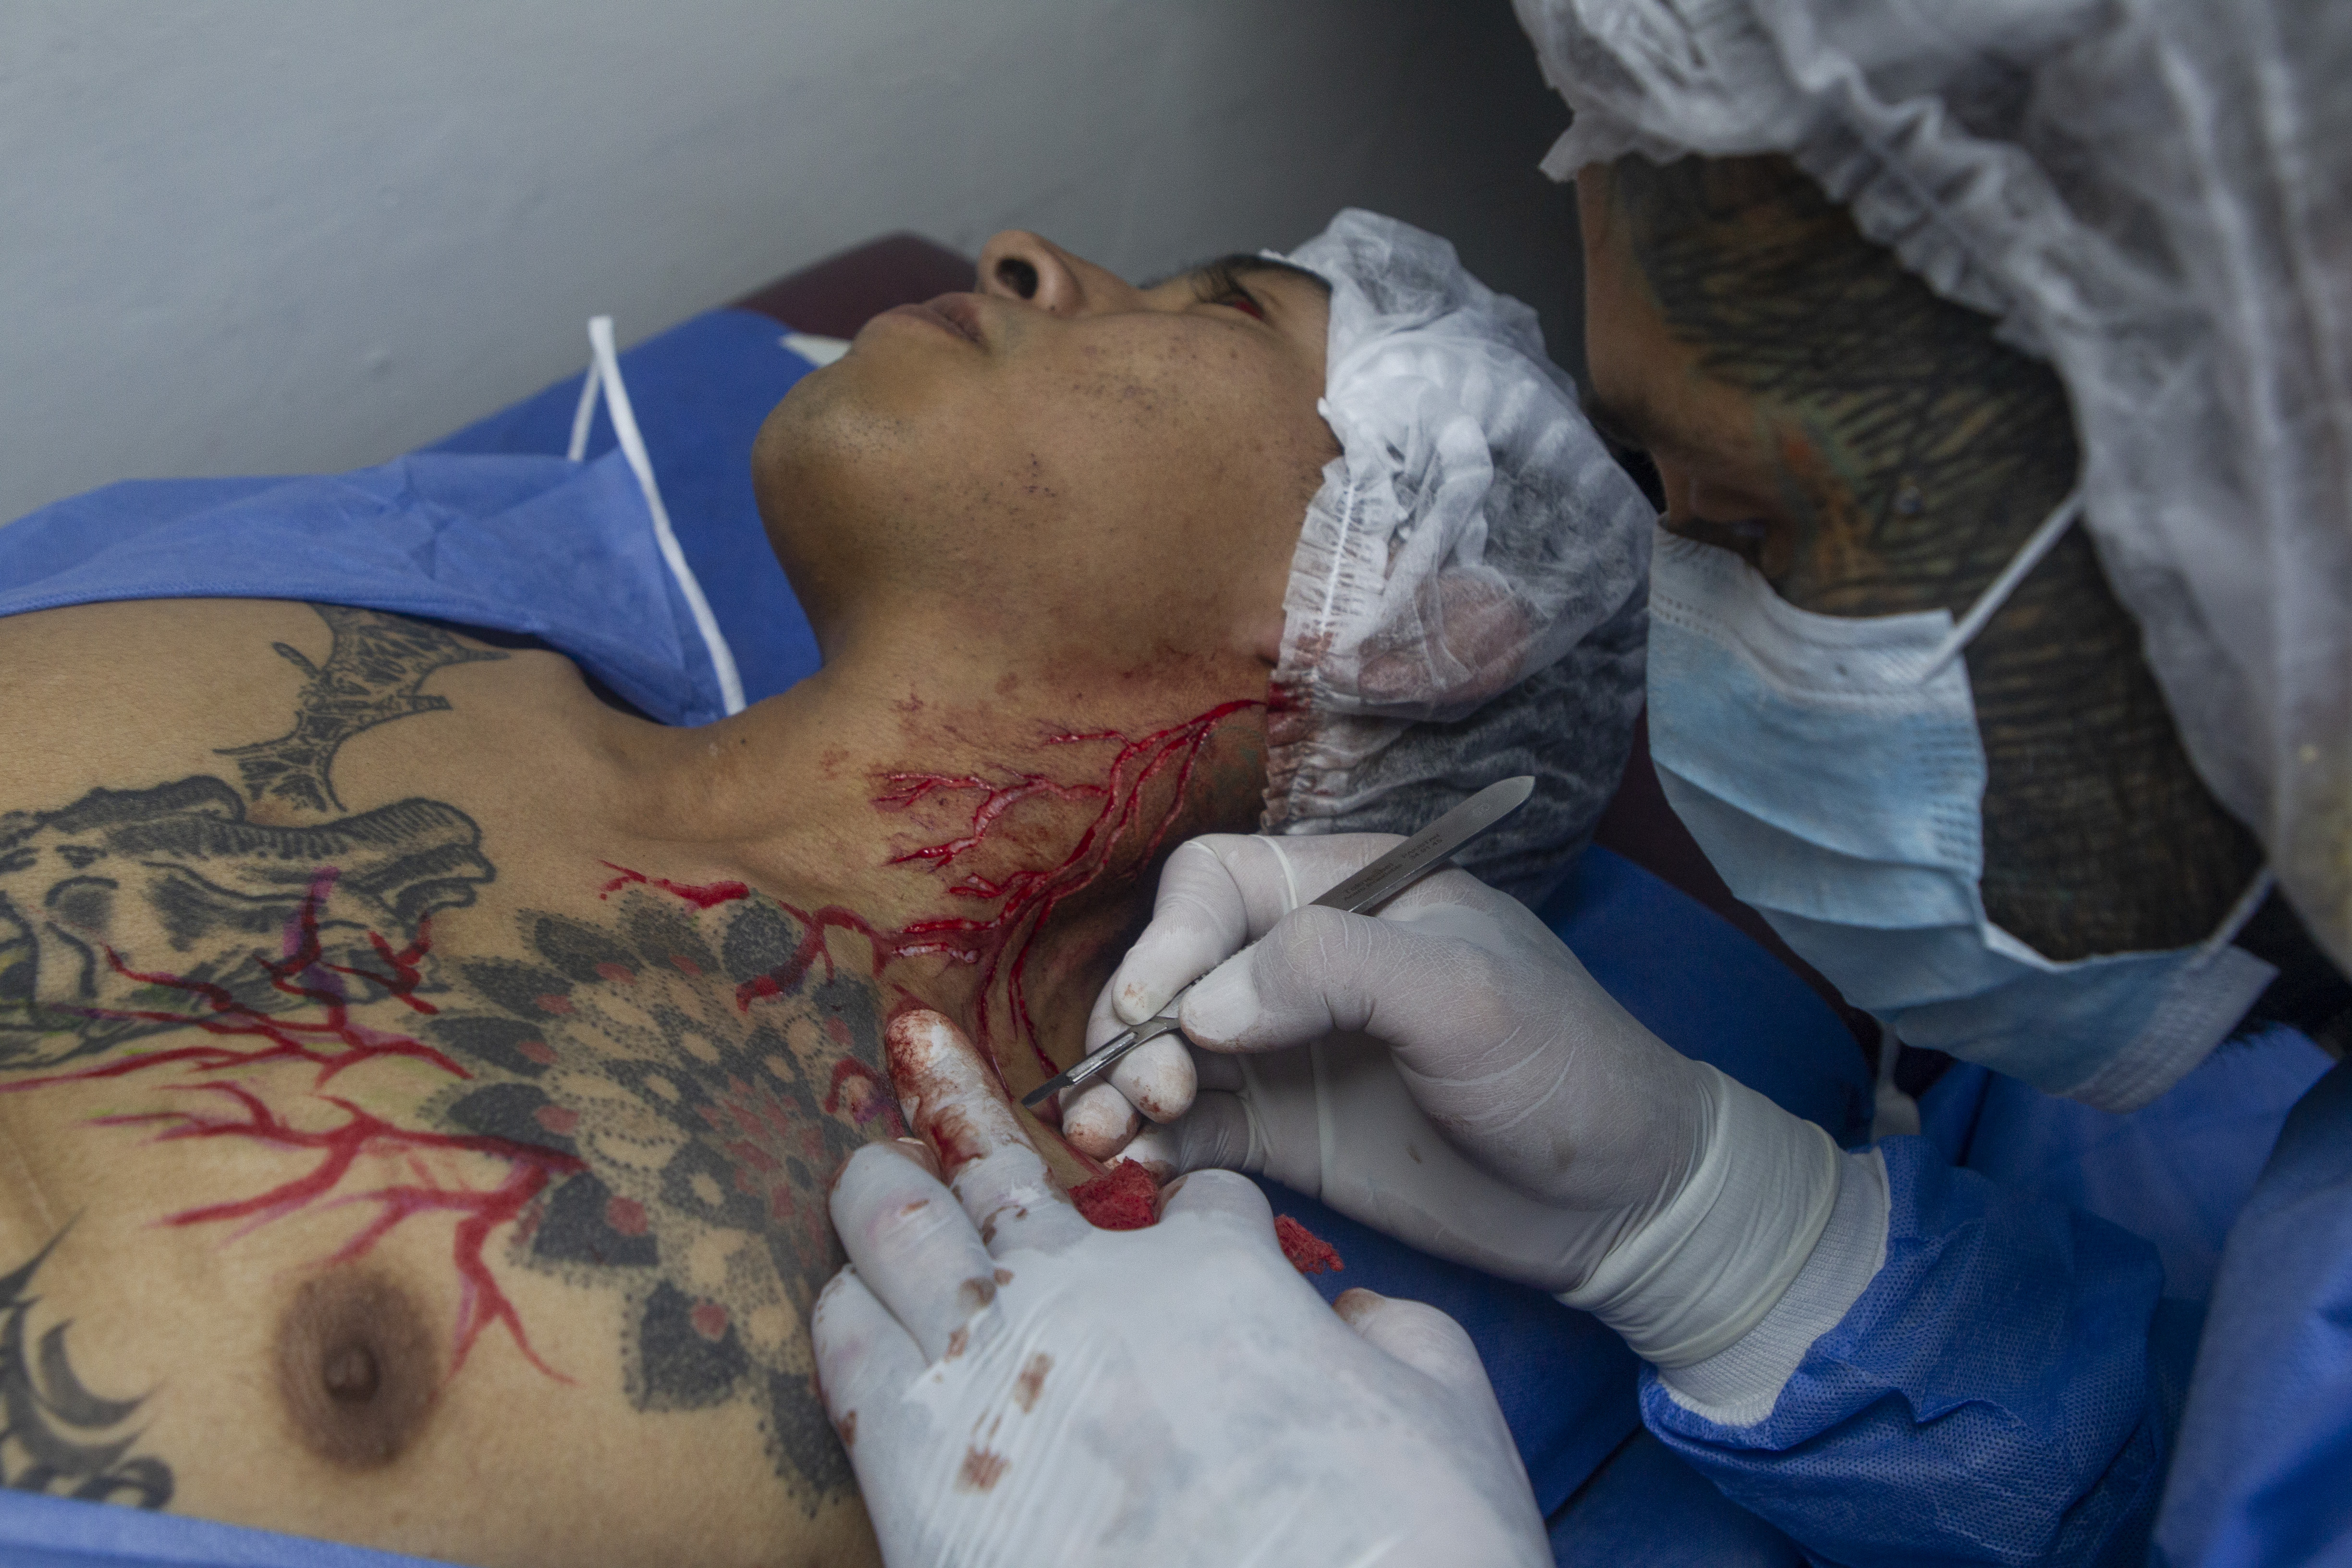 "Plaga" realizando una escarificación en forma de rayo sobre el cuello y Pecho de "Chivo" quien es aprendiz de tatuaje y cada modificación para él significa un modo de sanar.
Noviembre 18, 2021 
Foto: Karina Hernández / Infobae